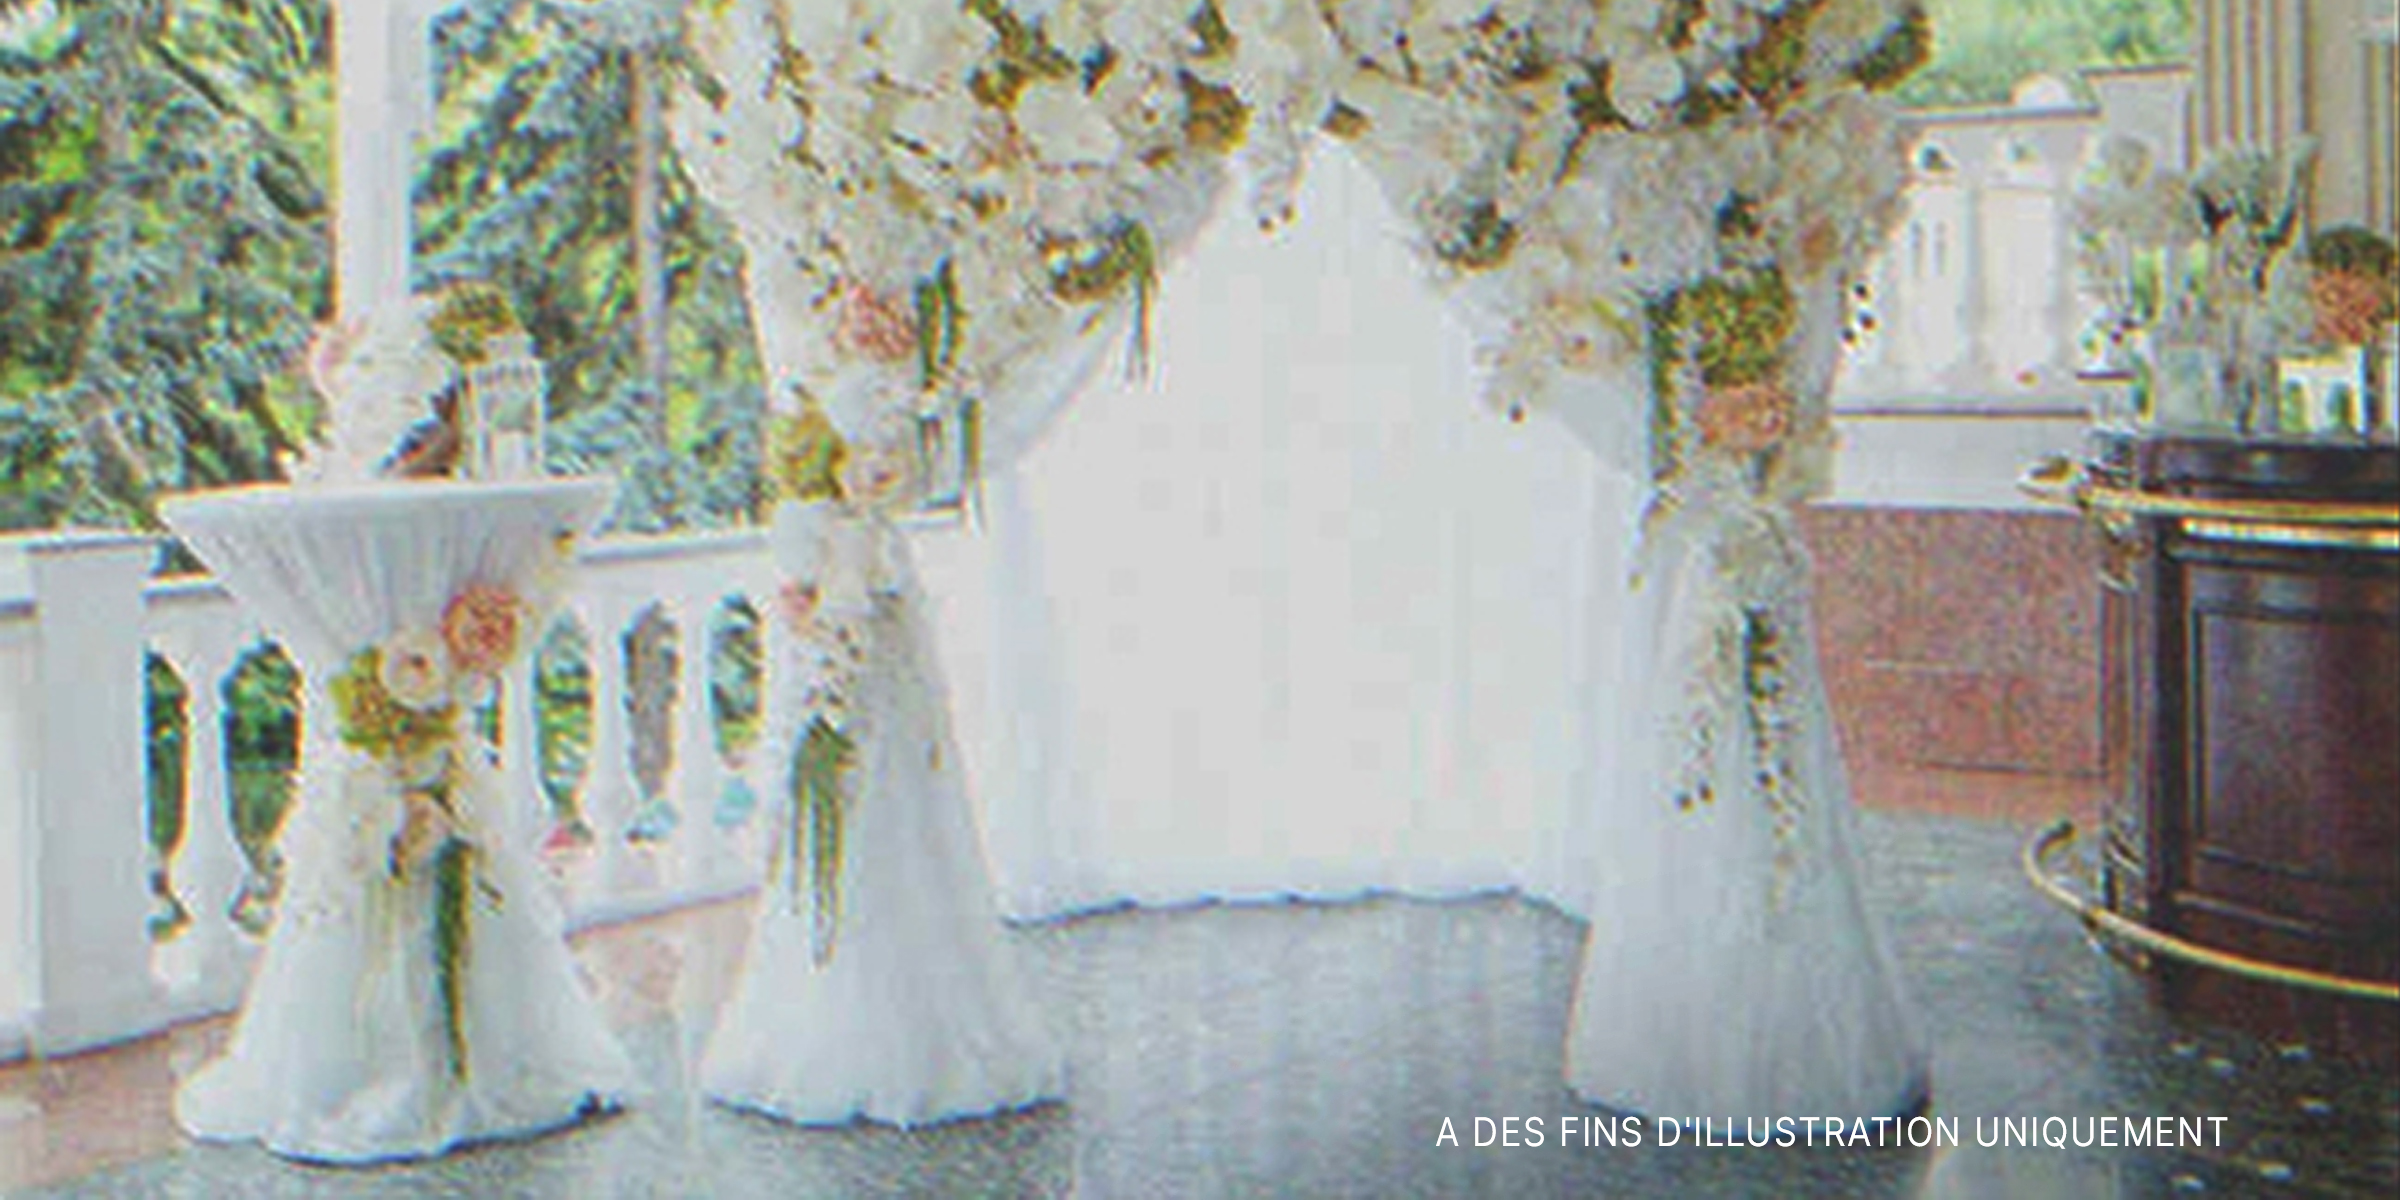 Une décoration de mariage | Source : Shutterstock